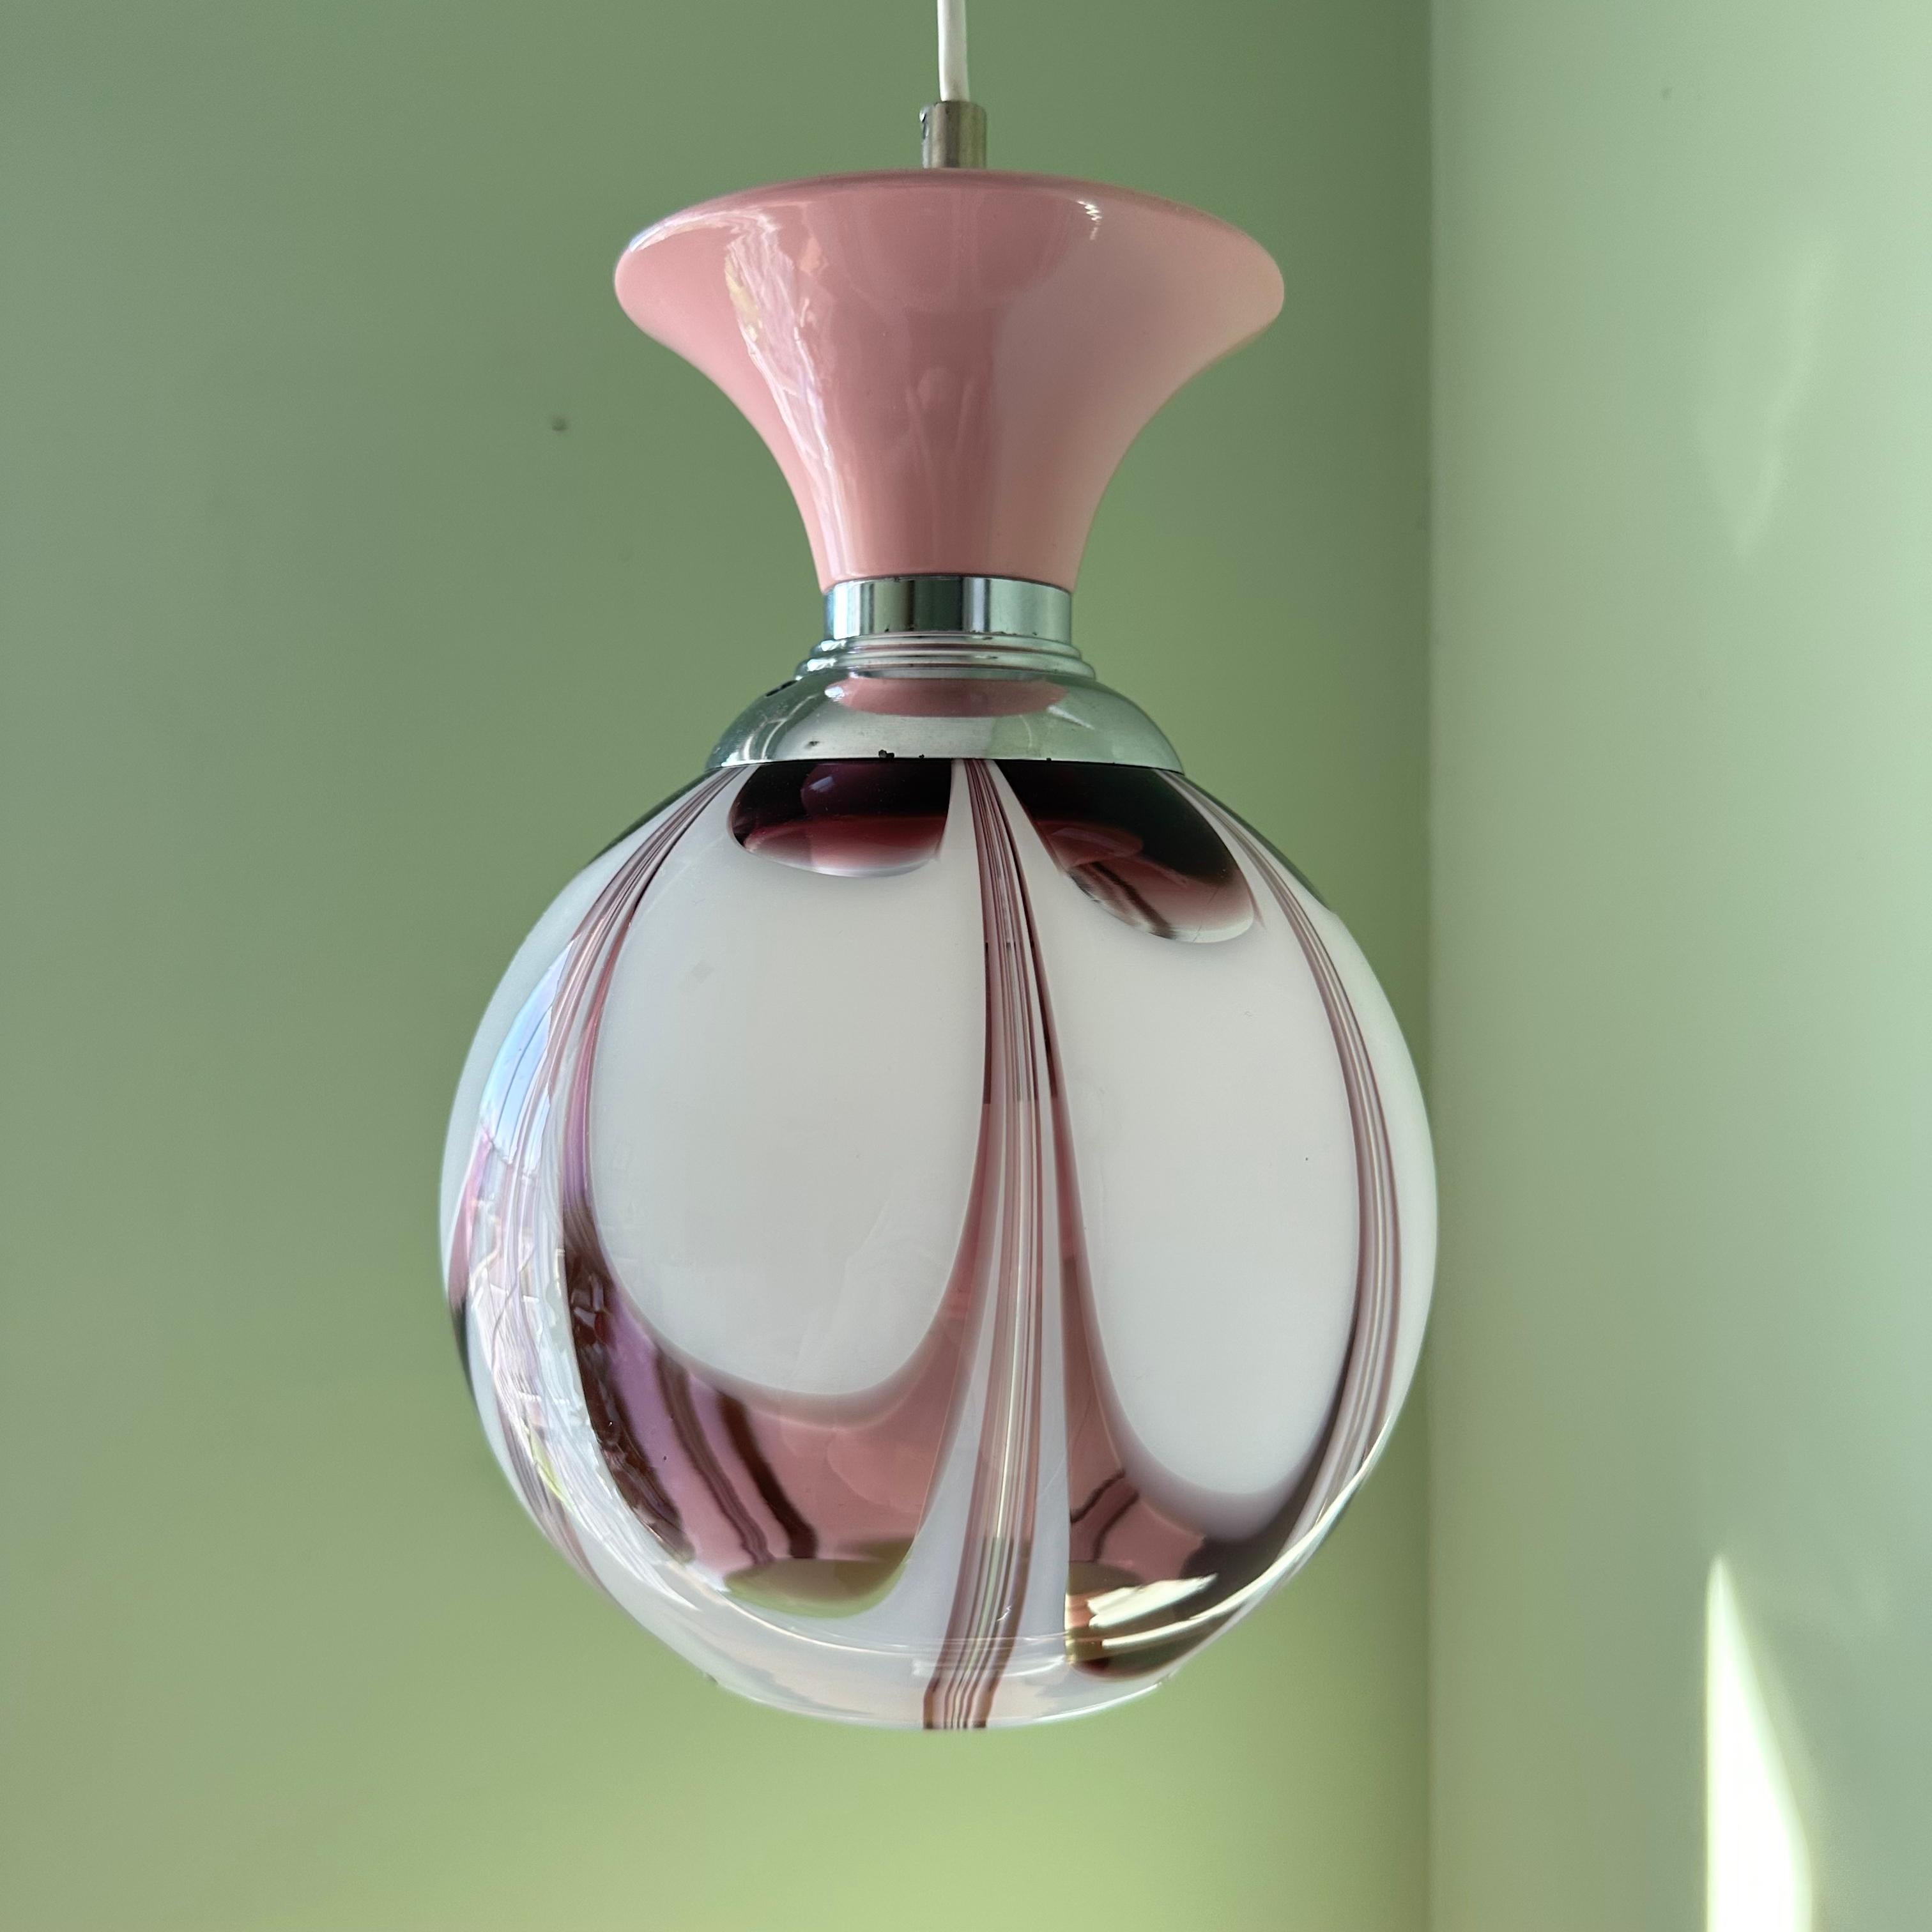 Eine absolut schöne Mitte des Jahrhunderts modernen Vintage Murano mundgeblasenem Glas Decke Pendelleuchte in einem Strudel von Amethyst lila und milchig weiß. Diese feminine Leuchte wurde in Italien hergestellt und mit zusätzlichen Details in Rosa